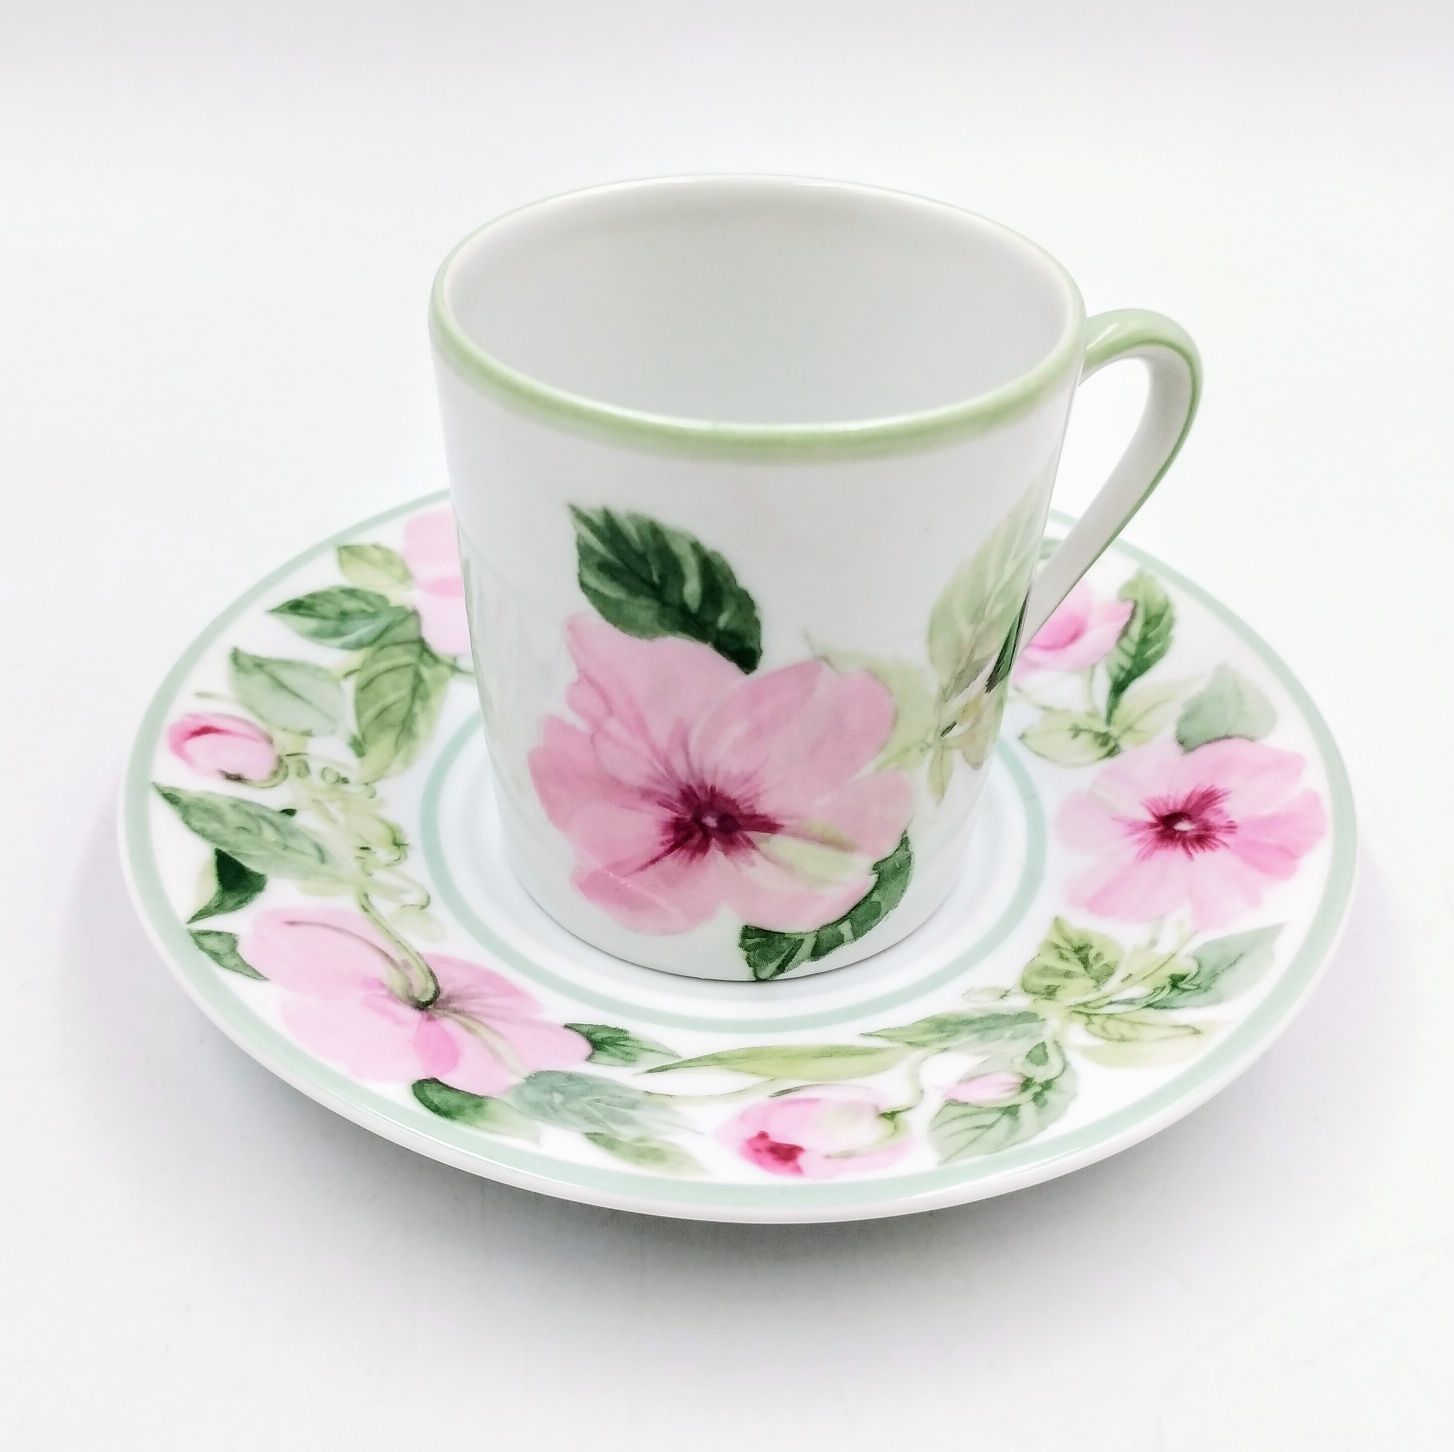 Filiżanka mała mokki espresso porcelana francuska kwiaty pastelowa róż